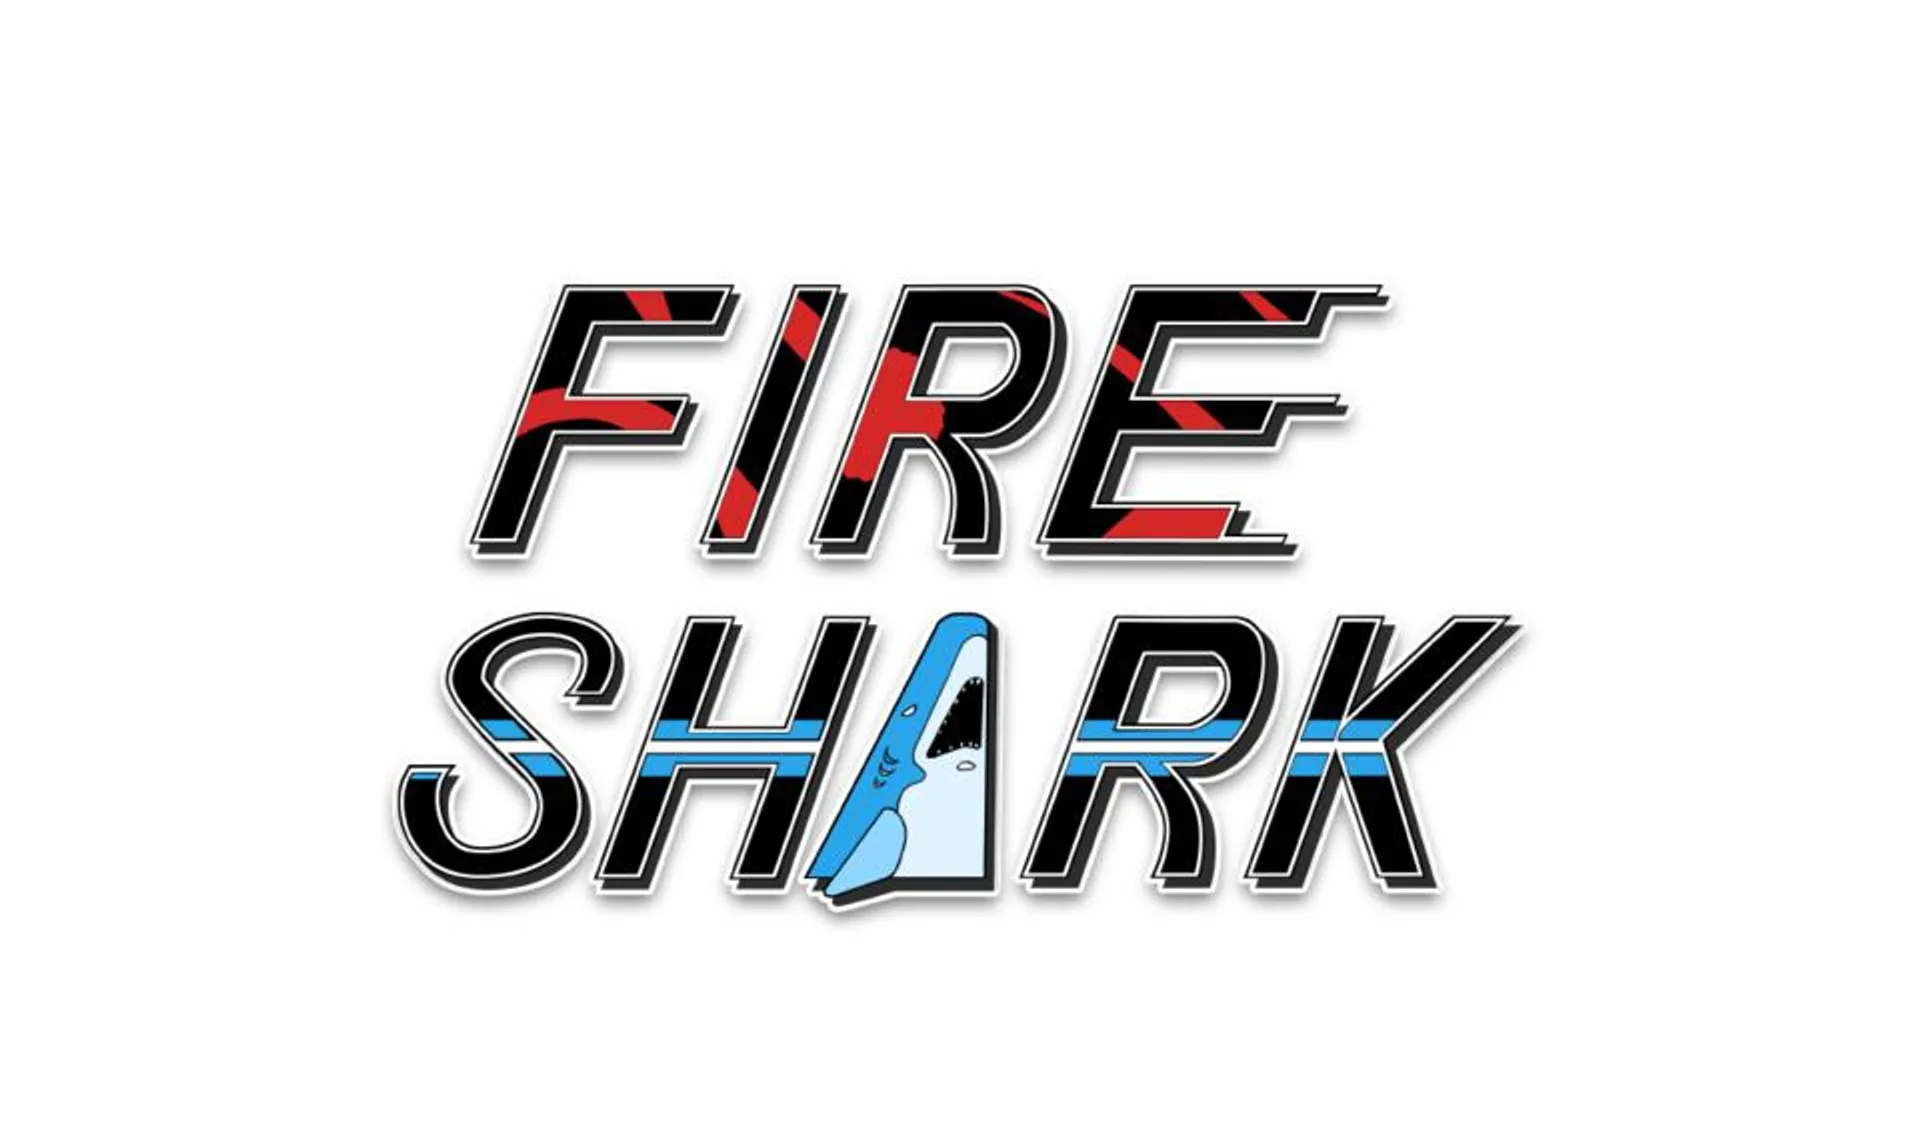 Fire Shark